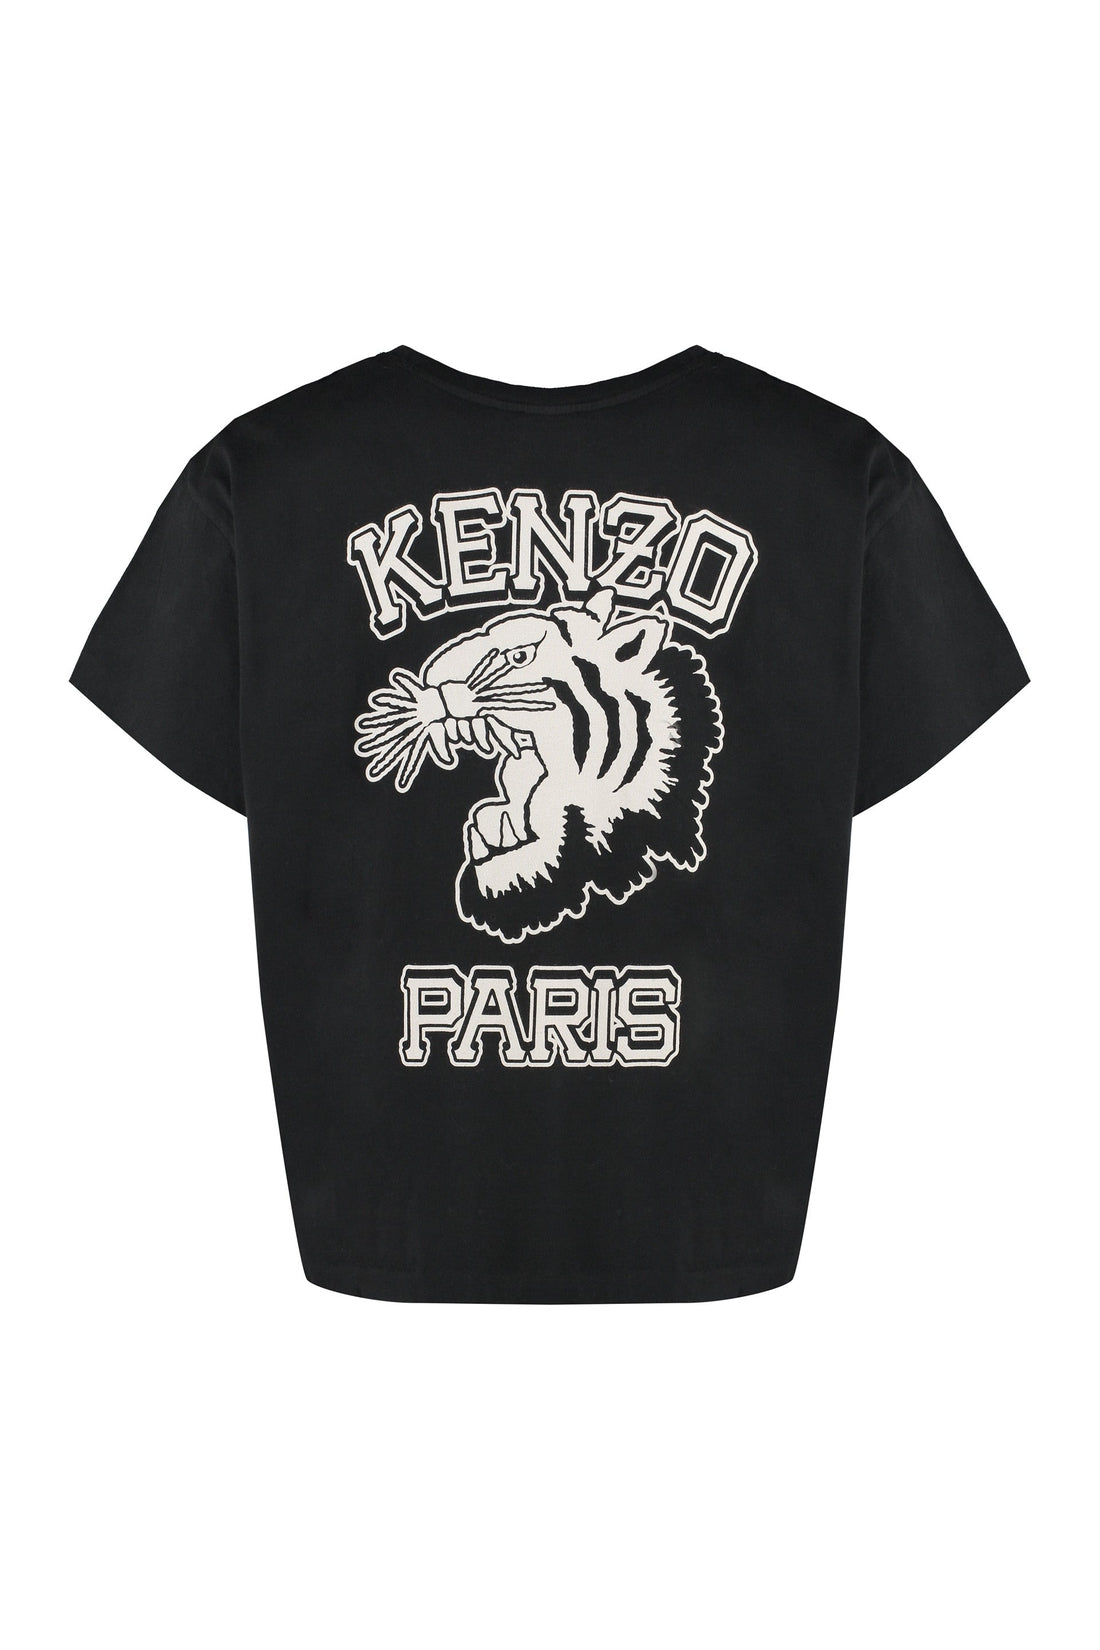 Kenzo-OUTLET-SALE-Cotton crew-neck T-shirt-ARCHIVIST